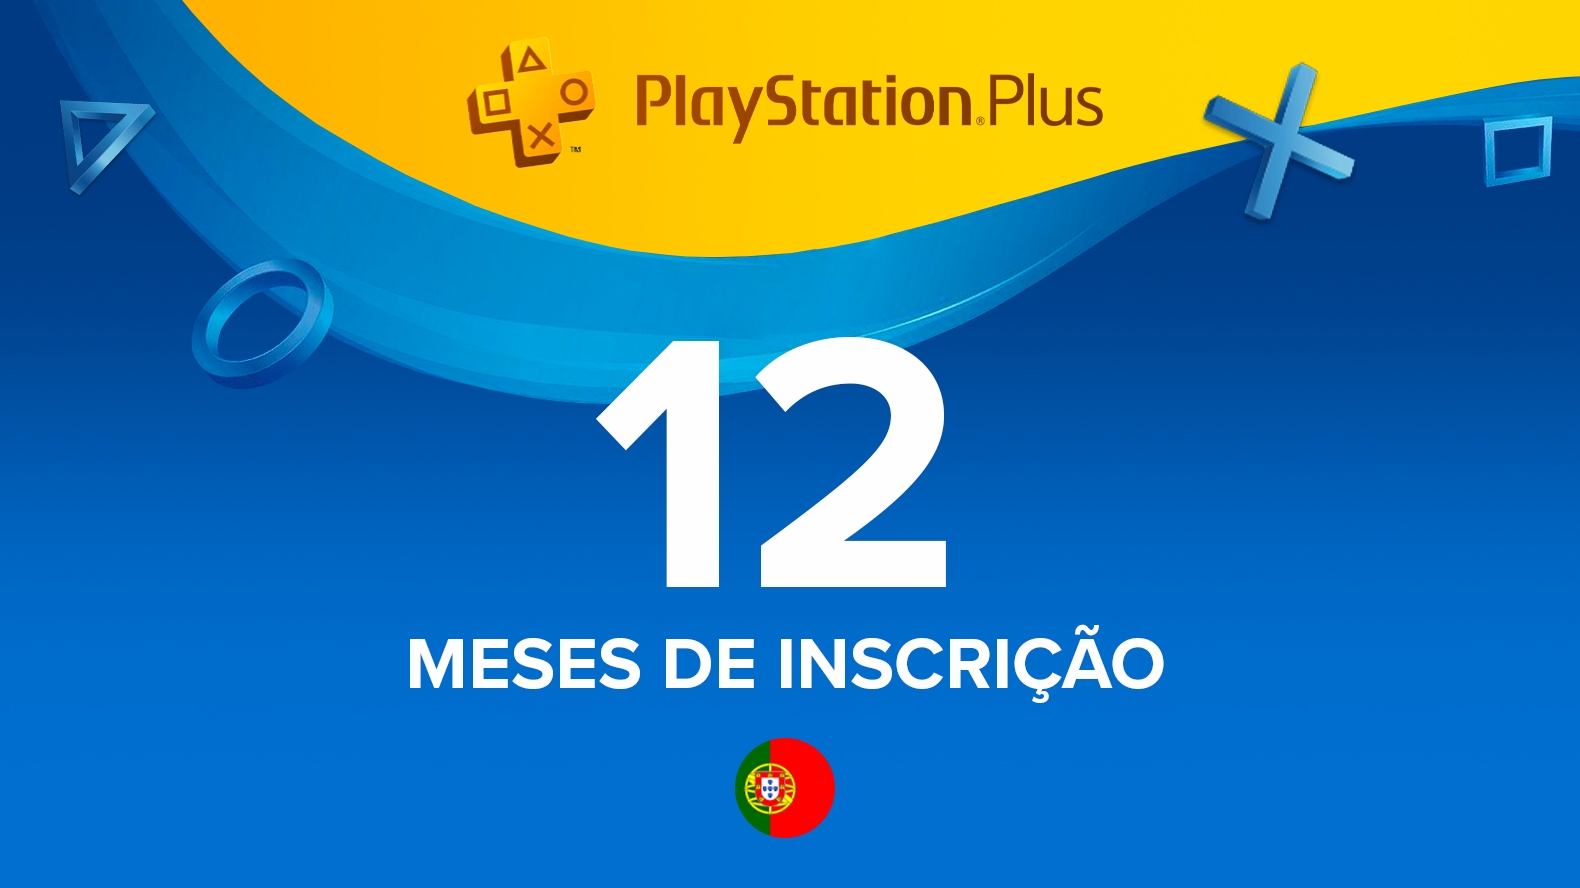 PlayStation Portugal - Queres desconto de 30€ nas subscrições de 12 meses  do PlayStation®Plus? 1 ano de Essential por 29,99 ou de Premium por 89,99€?  Então aproveita: até dia 20/12 na PlayStation